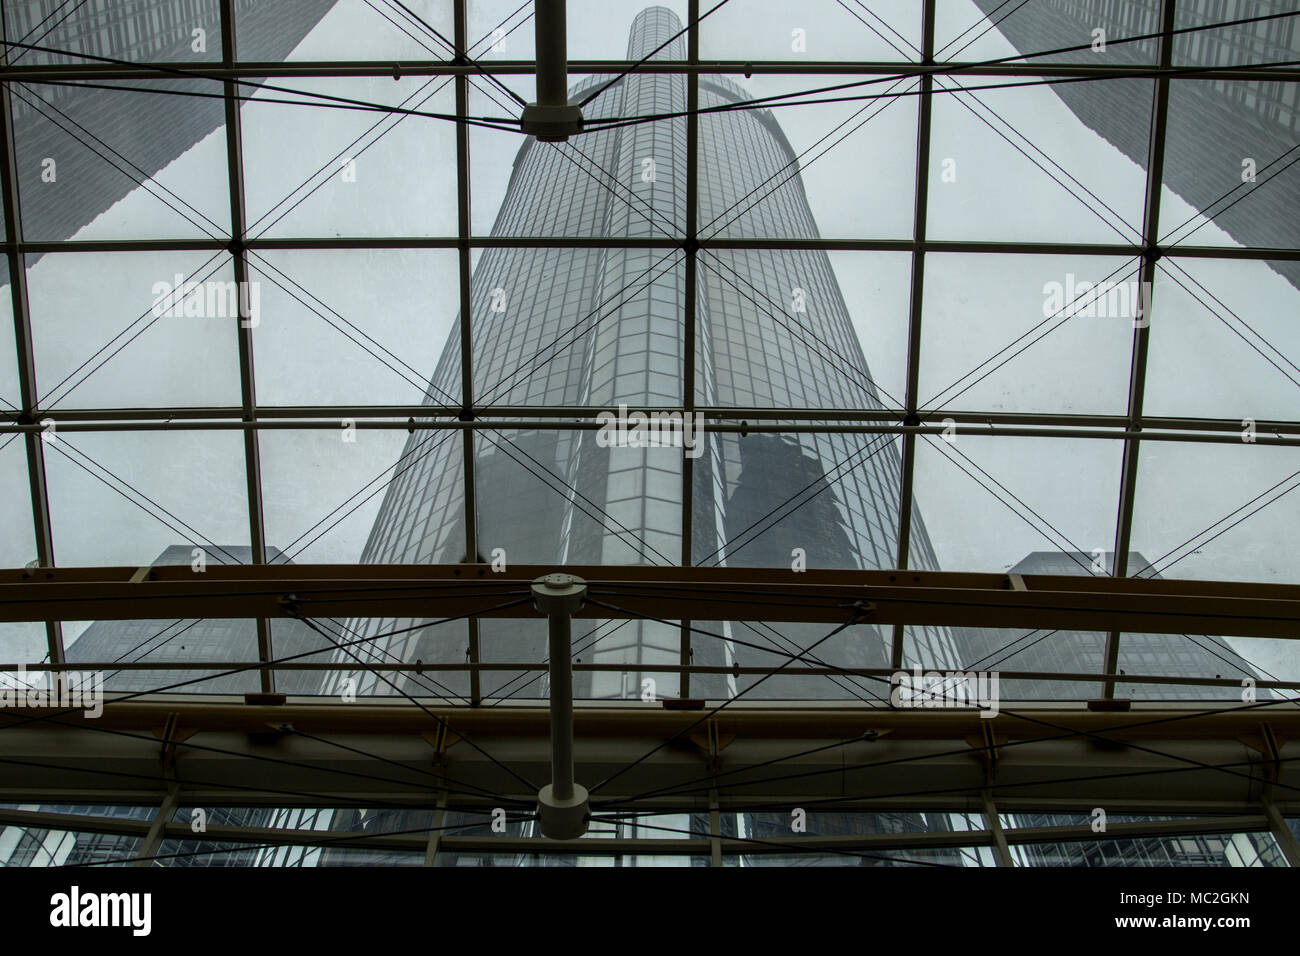 Detroit, Michigan, USA - 28. März 2018: Die Renaissance Center Türme von im Inneren des gläsernen Atrium gesehen. Die Türme sind die Welt Hauptsitz f Stockfoto